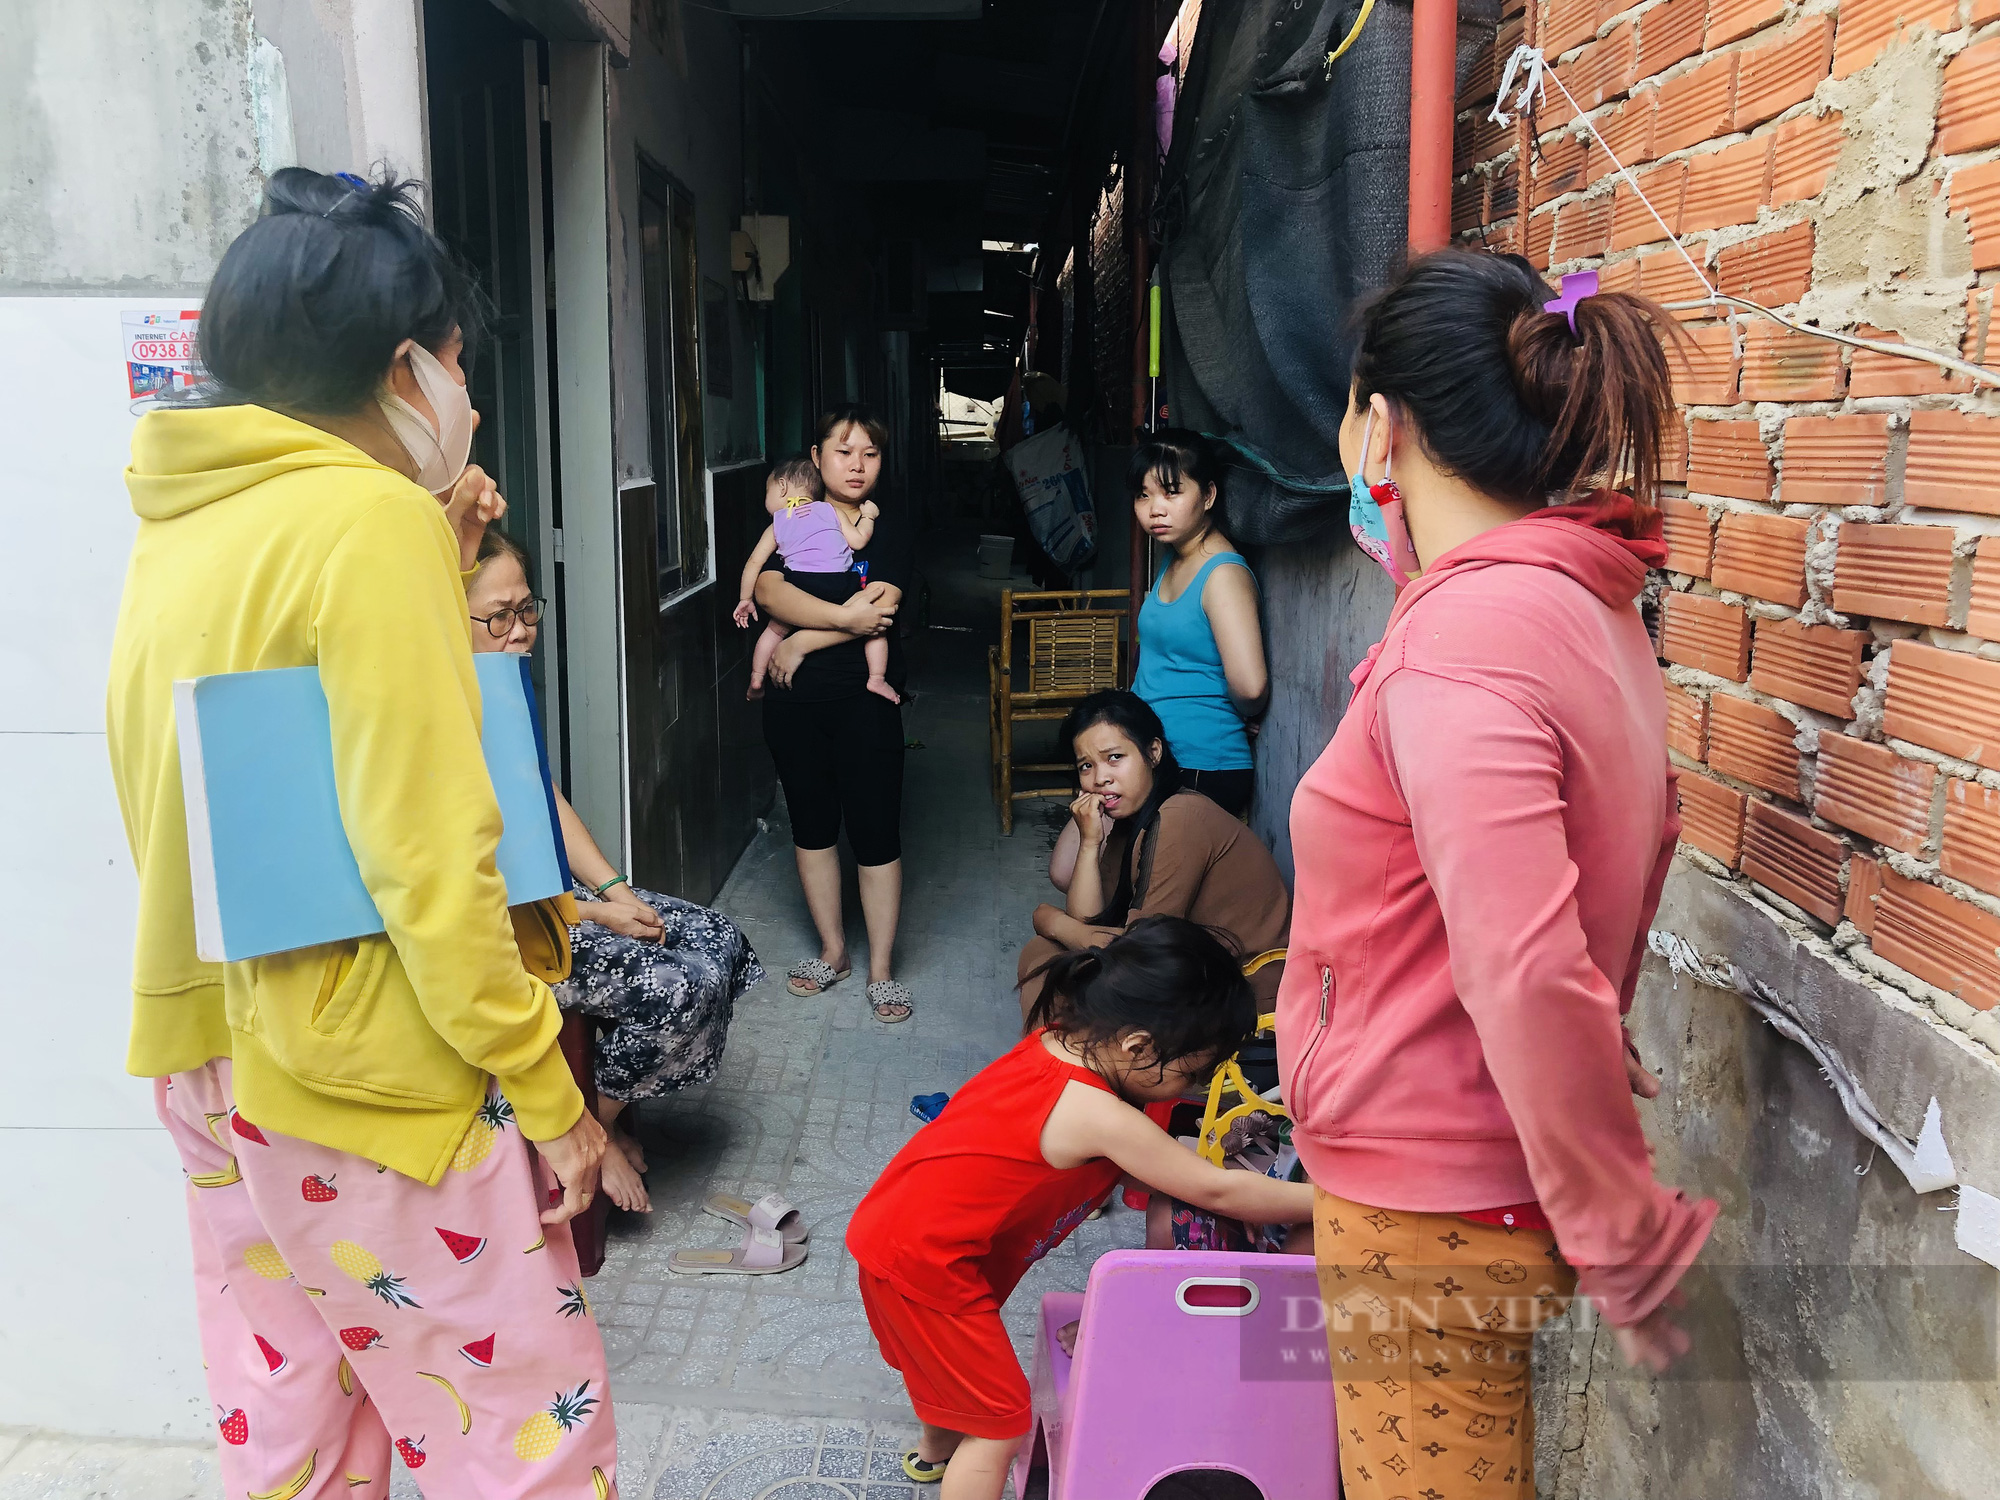 Sài Gòn trong tâm dịch Covid -19 Bài 1: Lao động nghèo sống vất vả trong những khu nhà trọ chật hẹp - Ảnh 1.